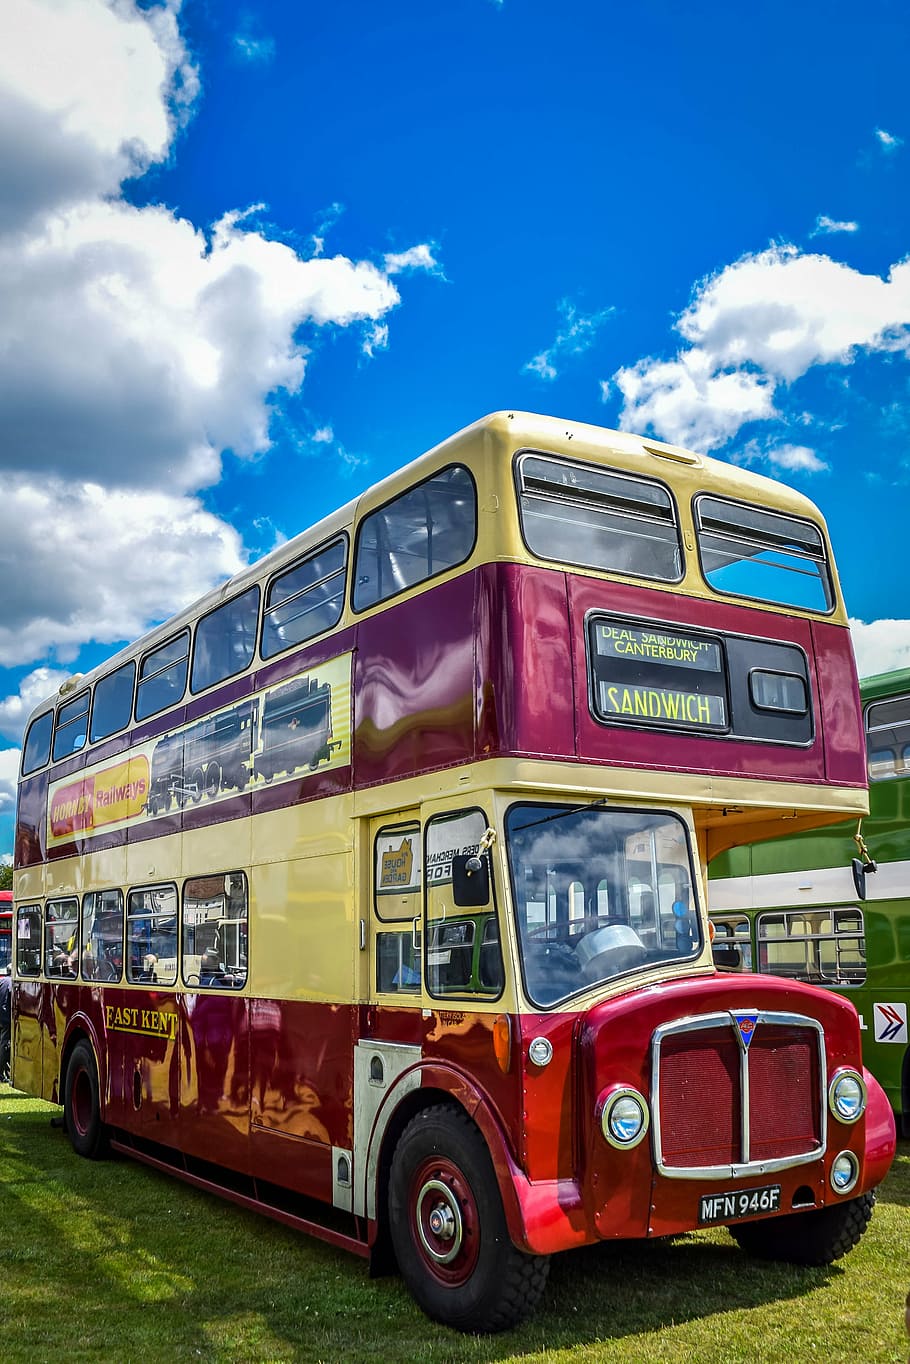 bus, retro, travel, design, vehicle, classic, british, portsmouth, mode of transportation, land vehicle